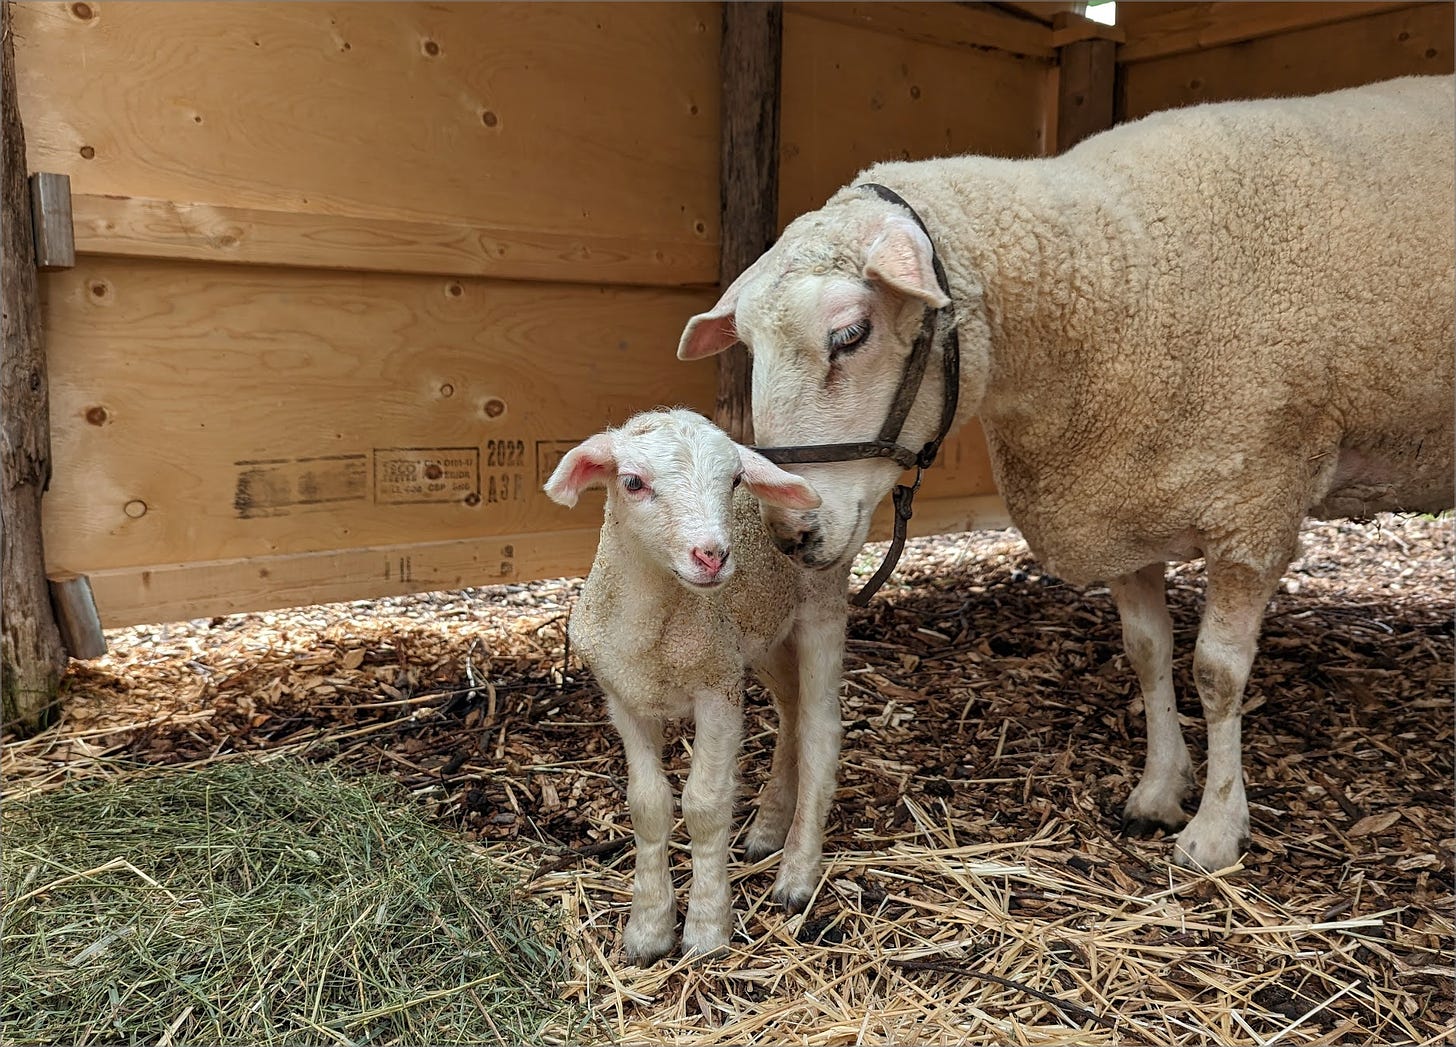 Lamb with mama sheep